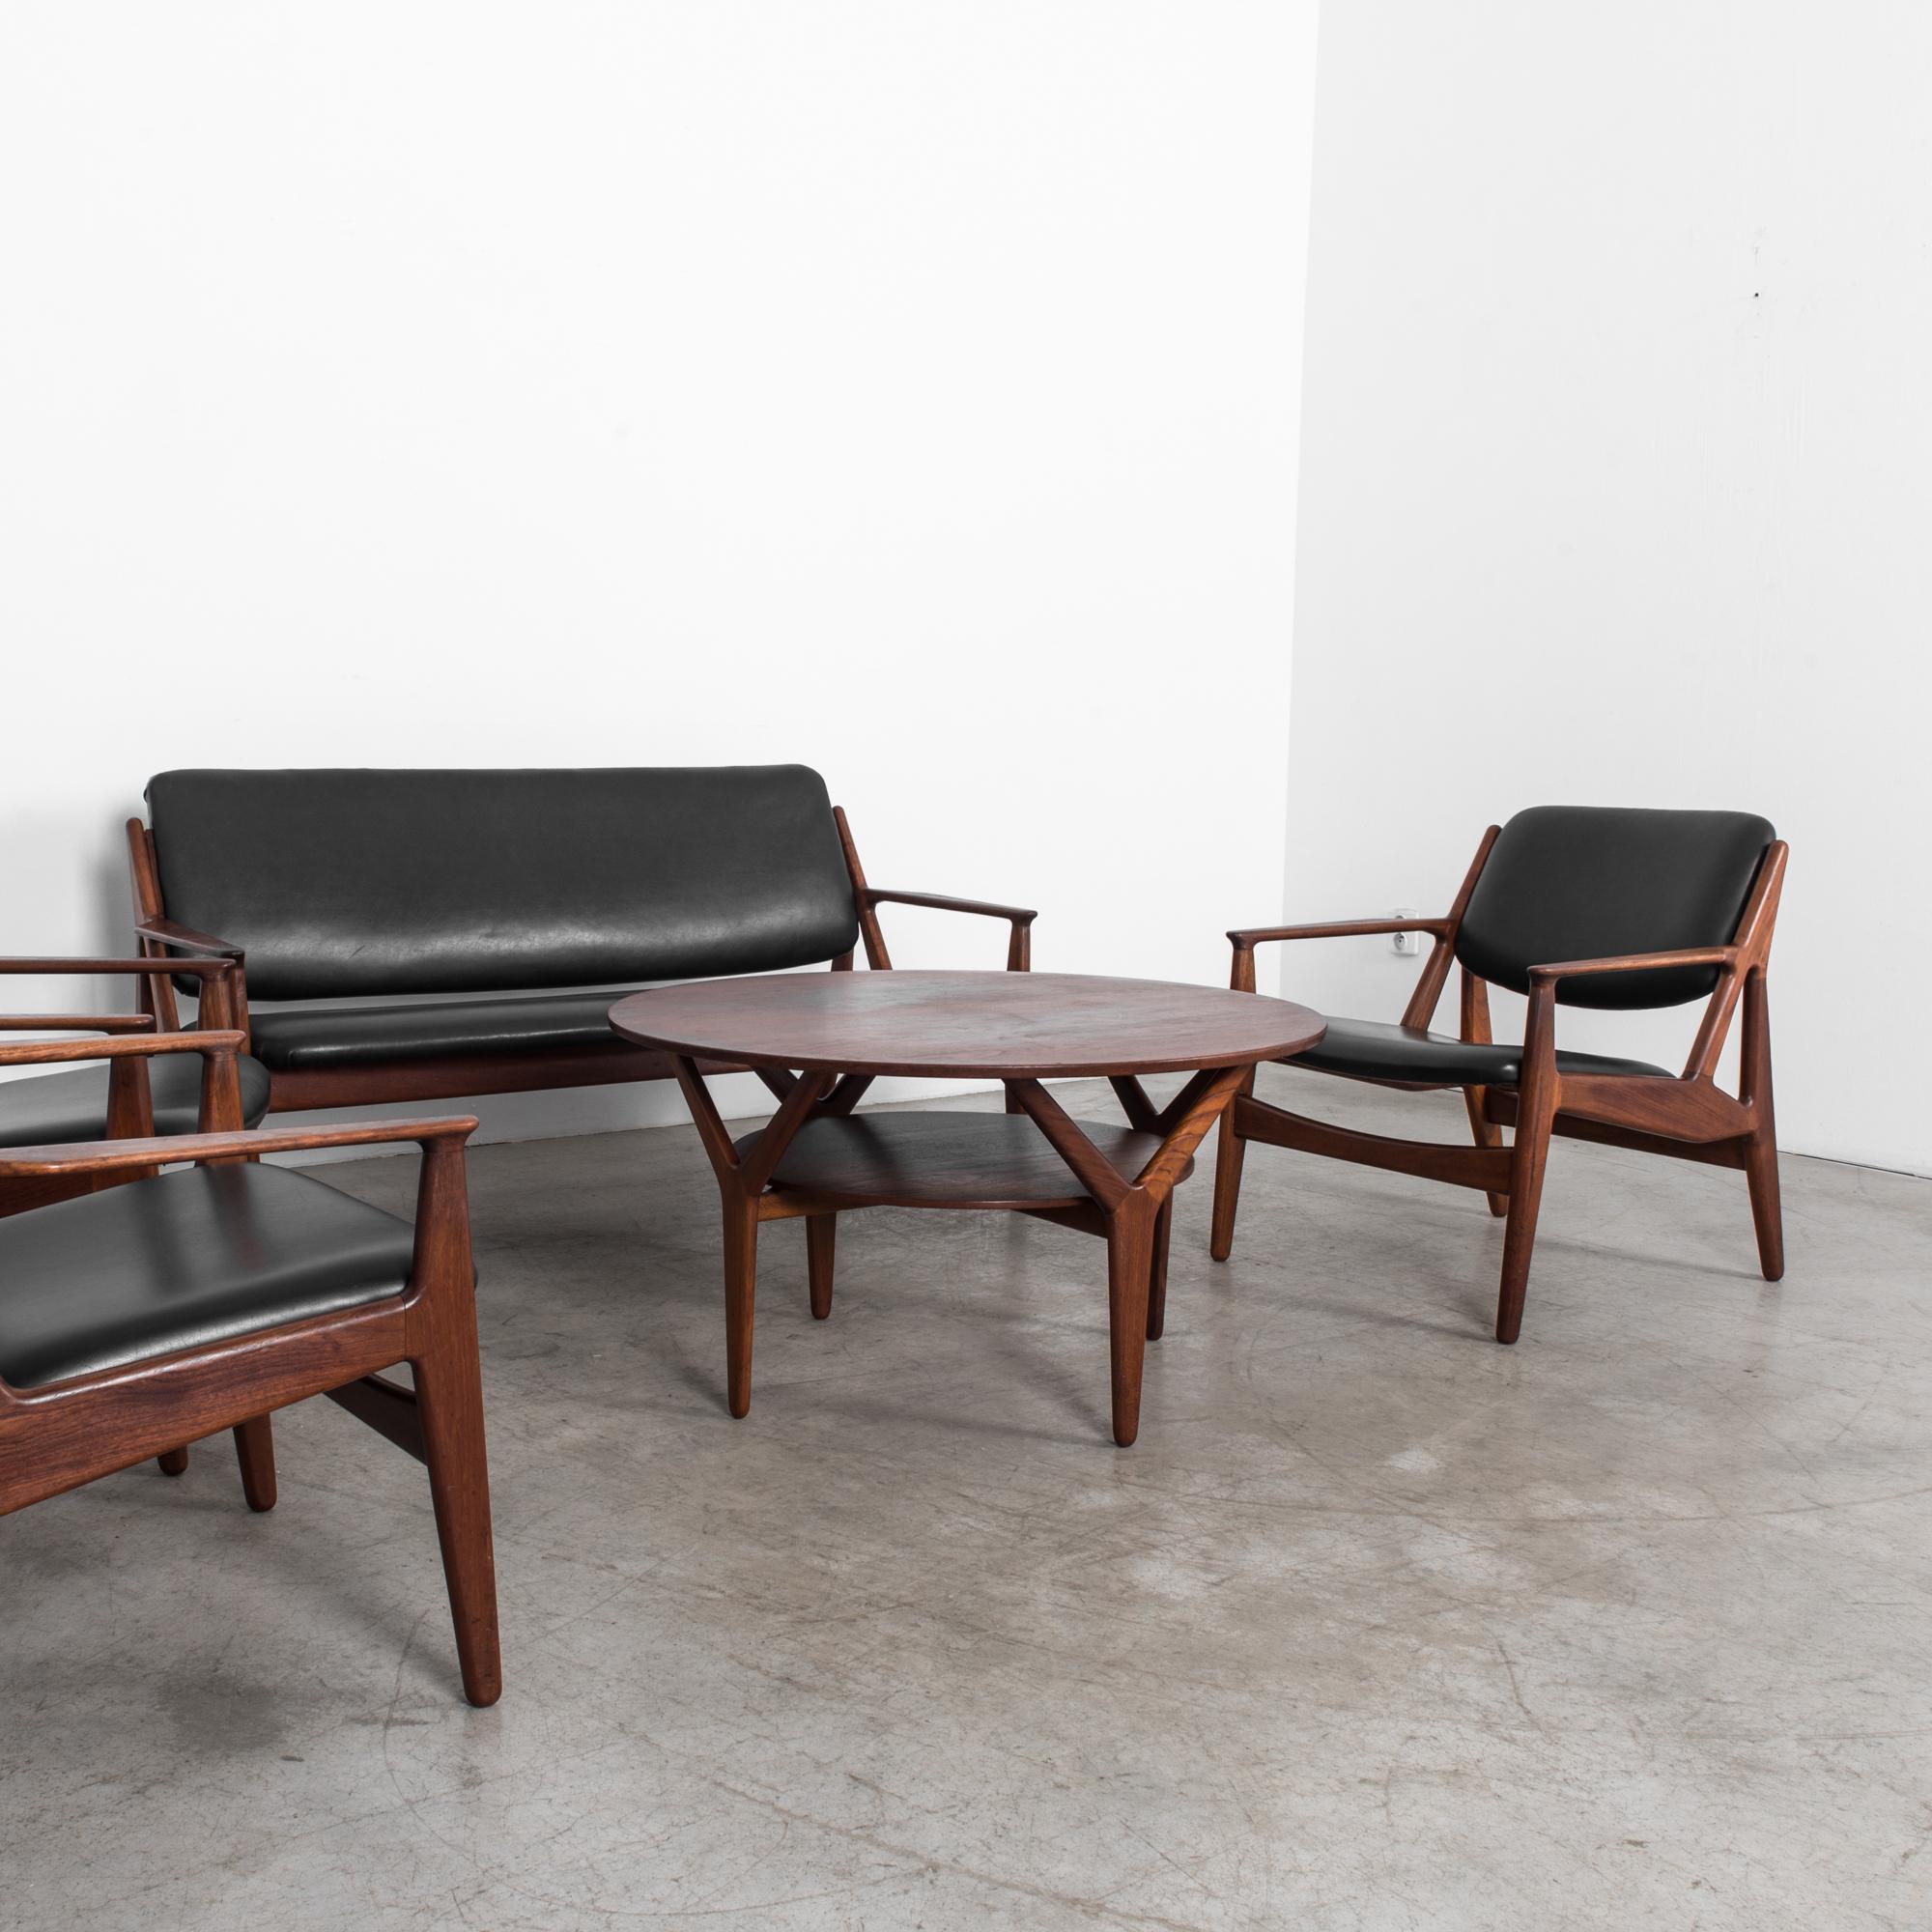 Danish Teak and Black Leather Living Room Set by Arne Vodder